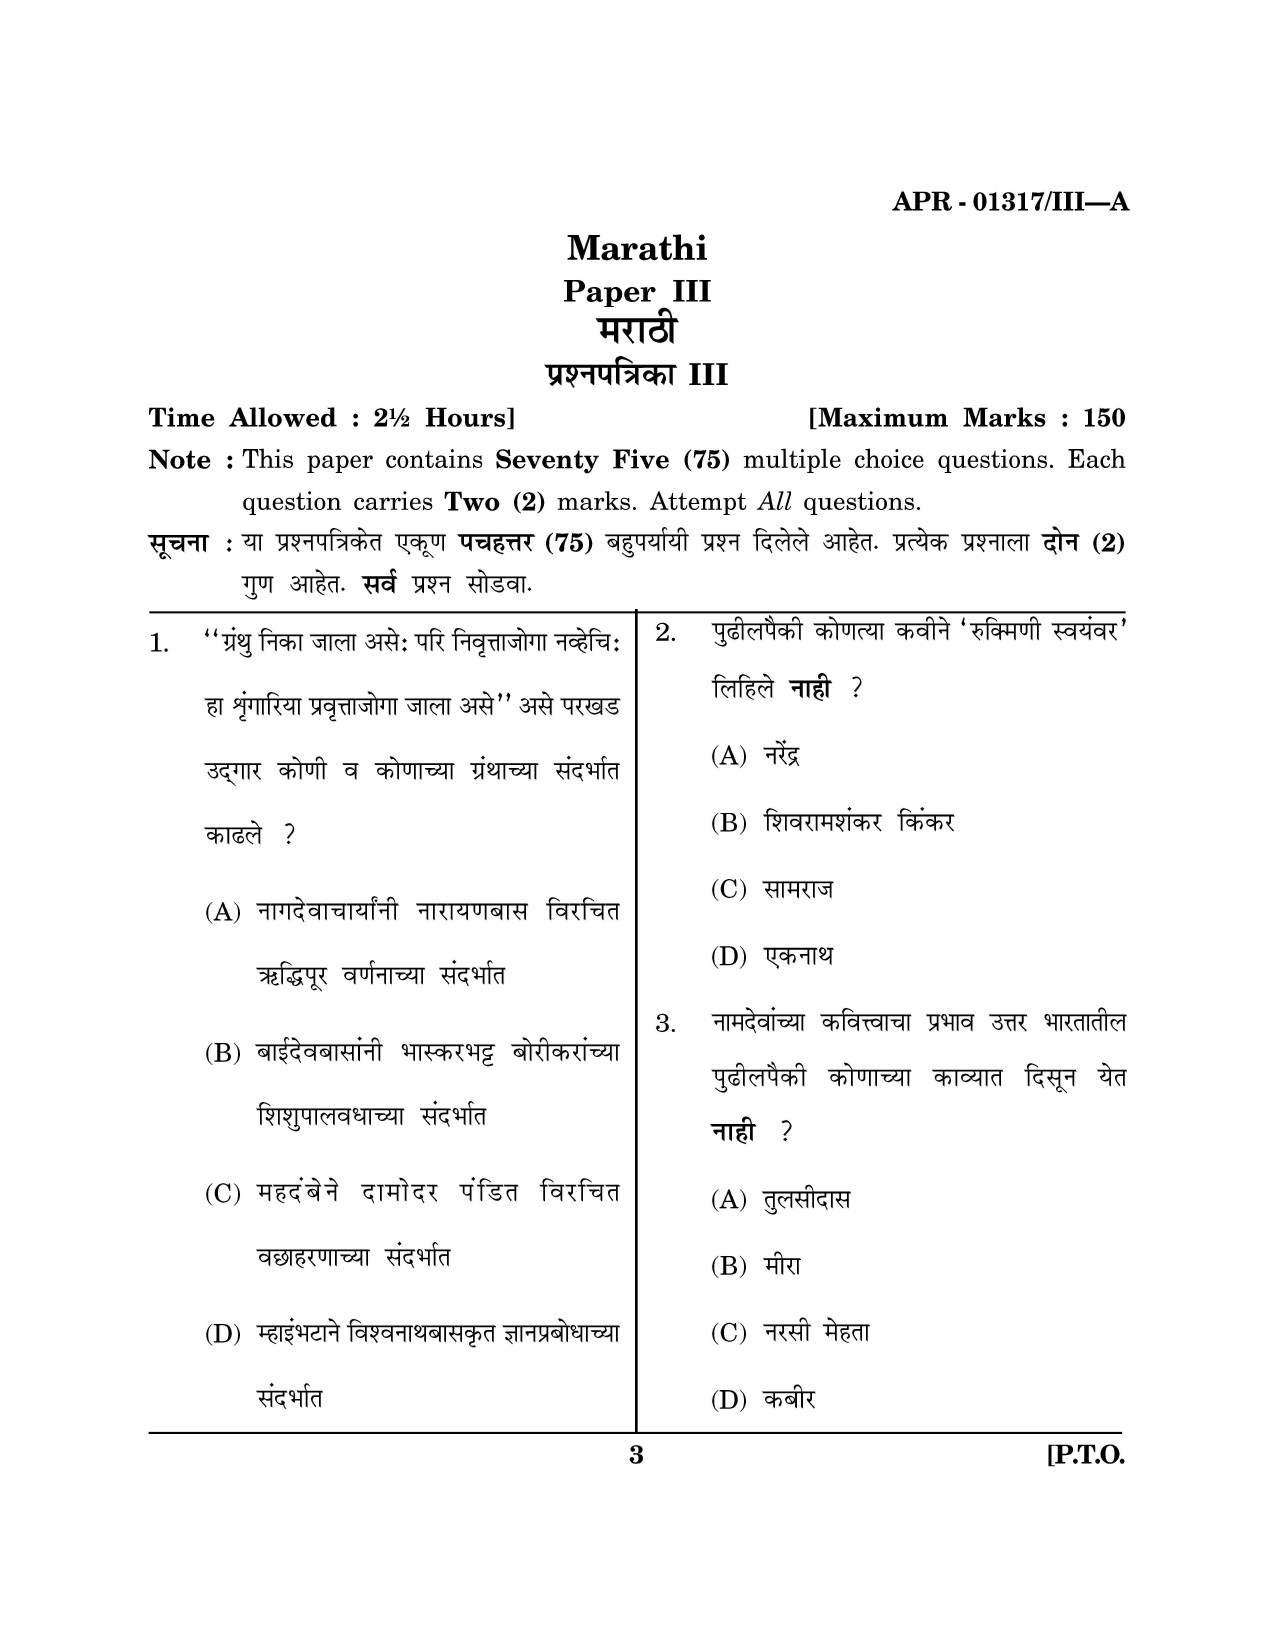 Maharashtra SET Marathi Question Paper III April 2017 2